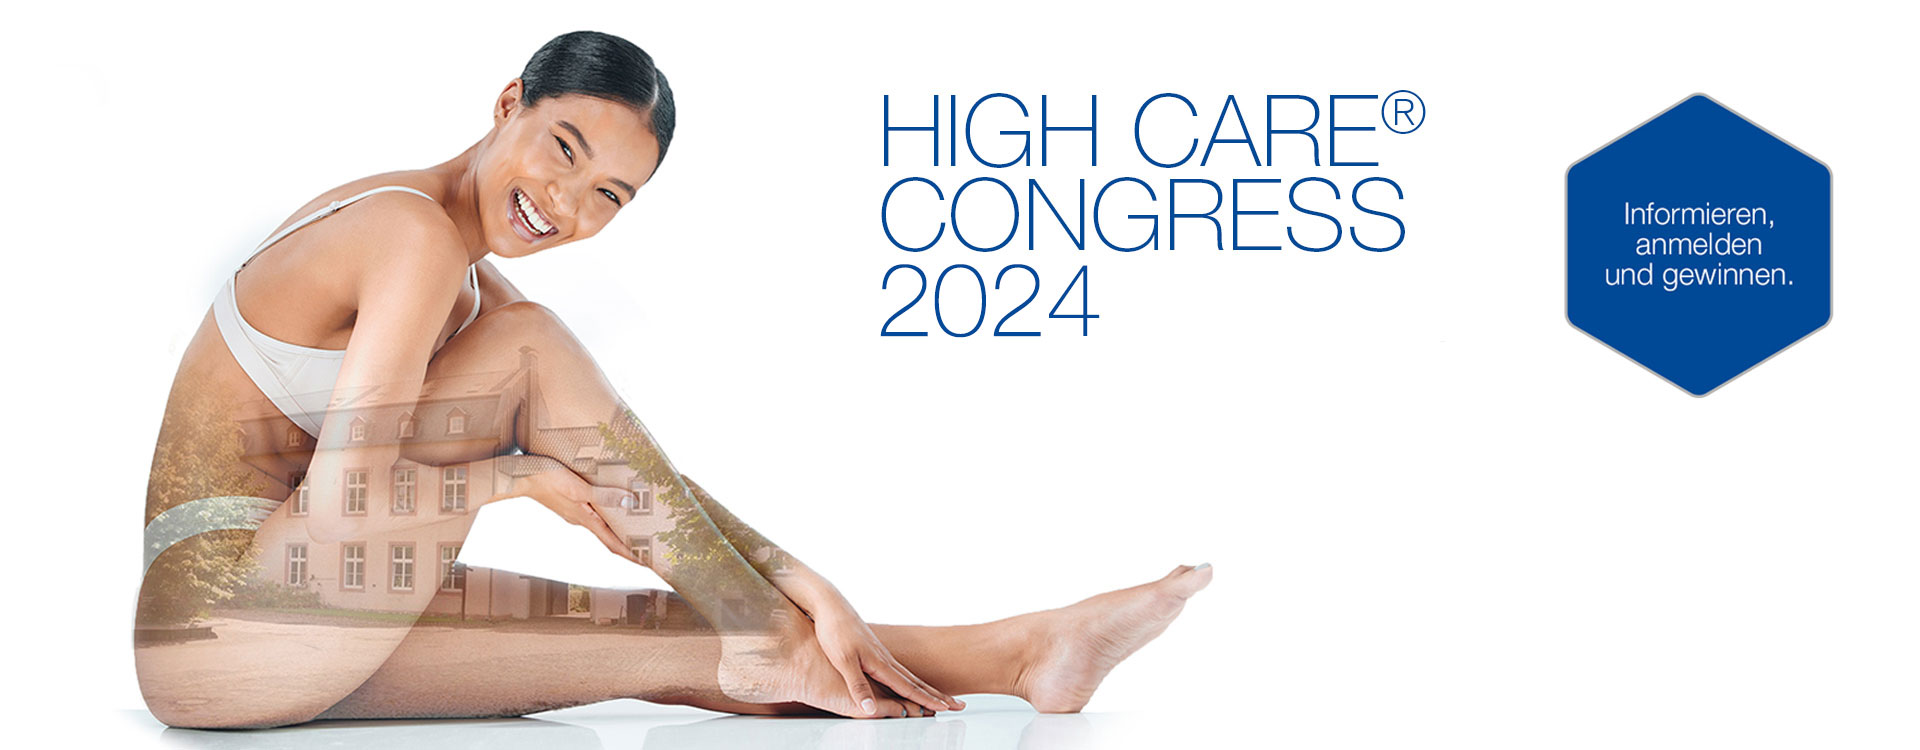 Anmeldung High Care Congress 2024